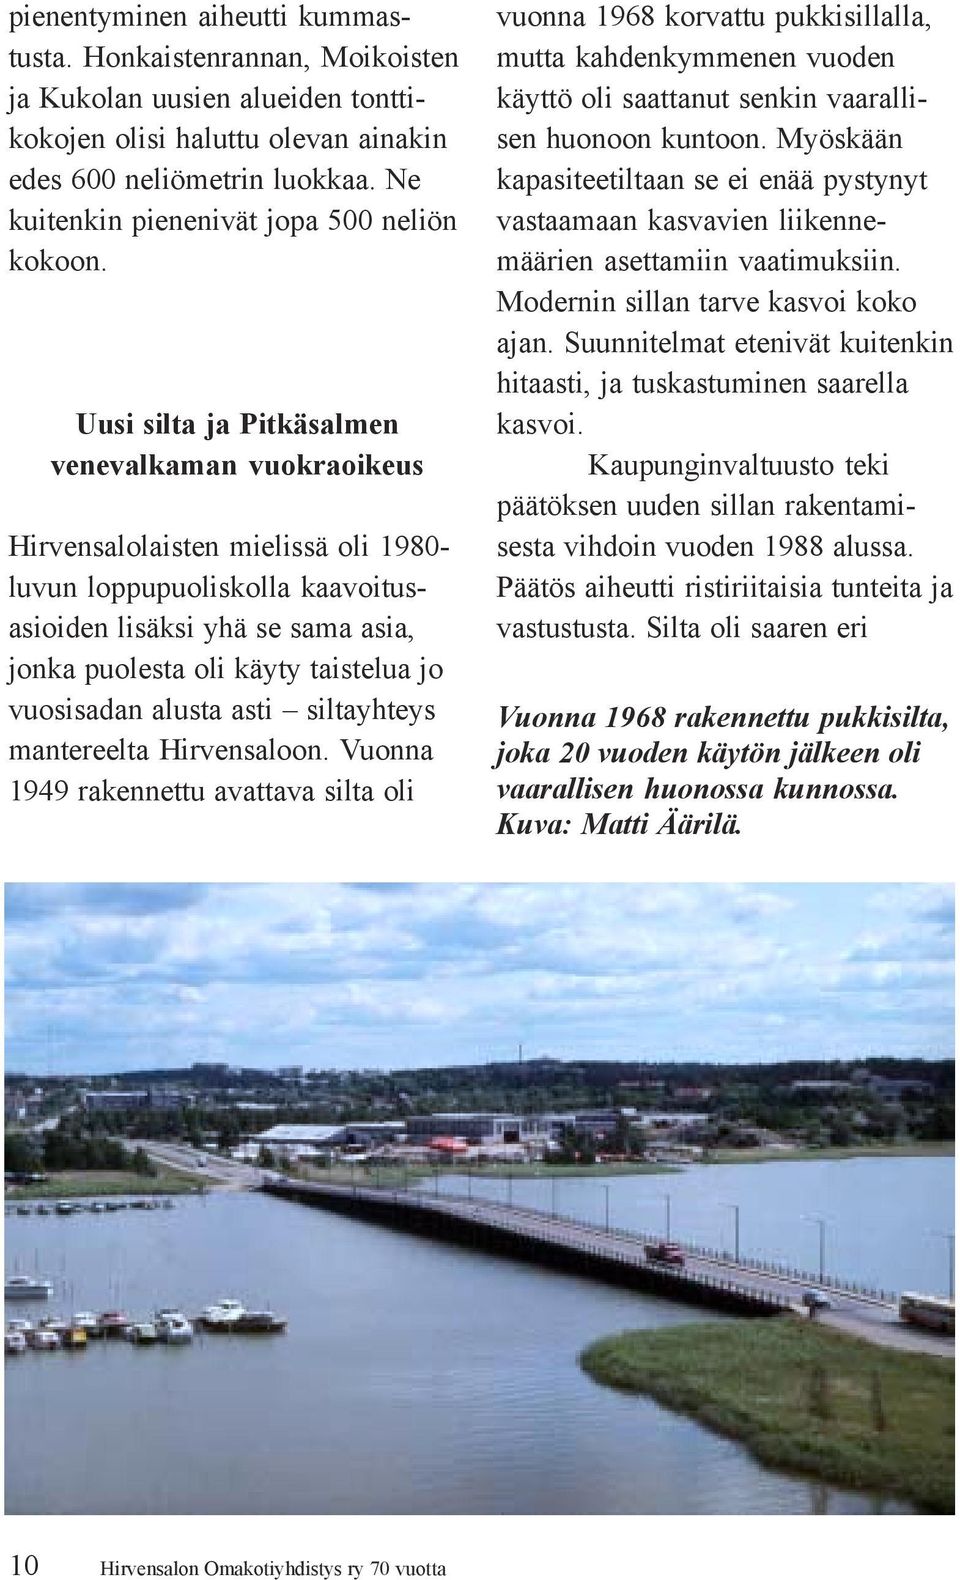 Uusi silta ja Pitkäsalmen venevalkaman vuokraoikeus Hirvensalolaisten mielissä oli 1980- luvun loppupuoliskolla kaavoitusasioiden lisäksi yhä se sama asia, jonka puolesta oli käyty taistelua jo